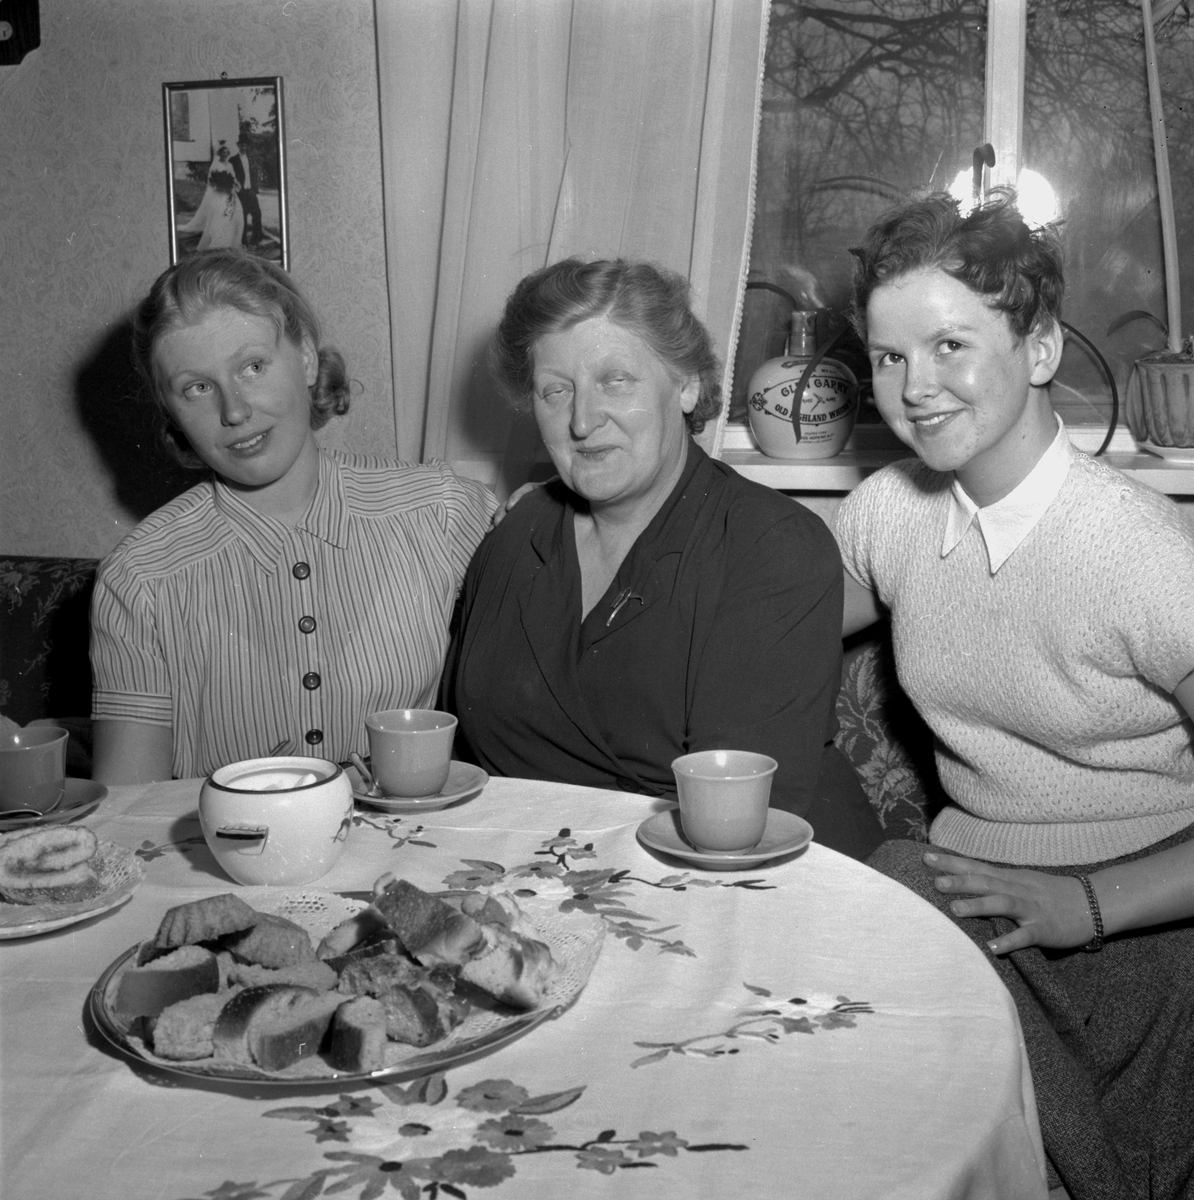 Pusselvinnande fru i Fellingsbro. Från vänster: Birgitta Svensson (f. Larsson), Alva Larsson.
23 januari 1956.